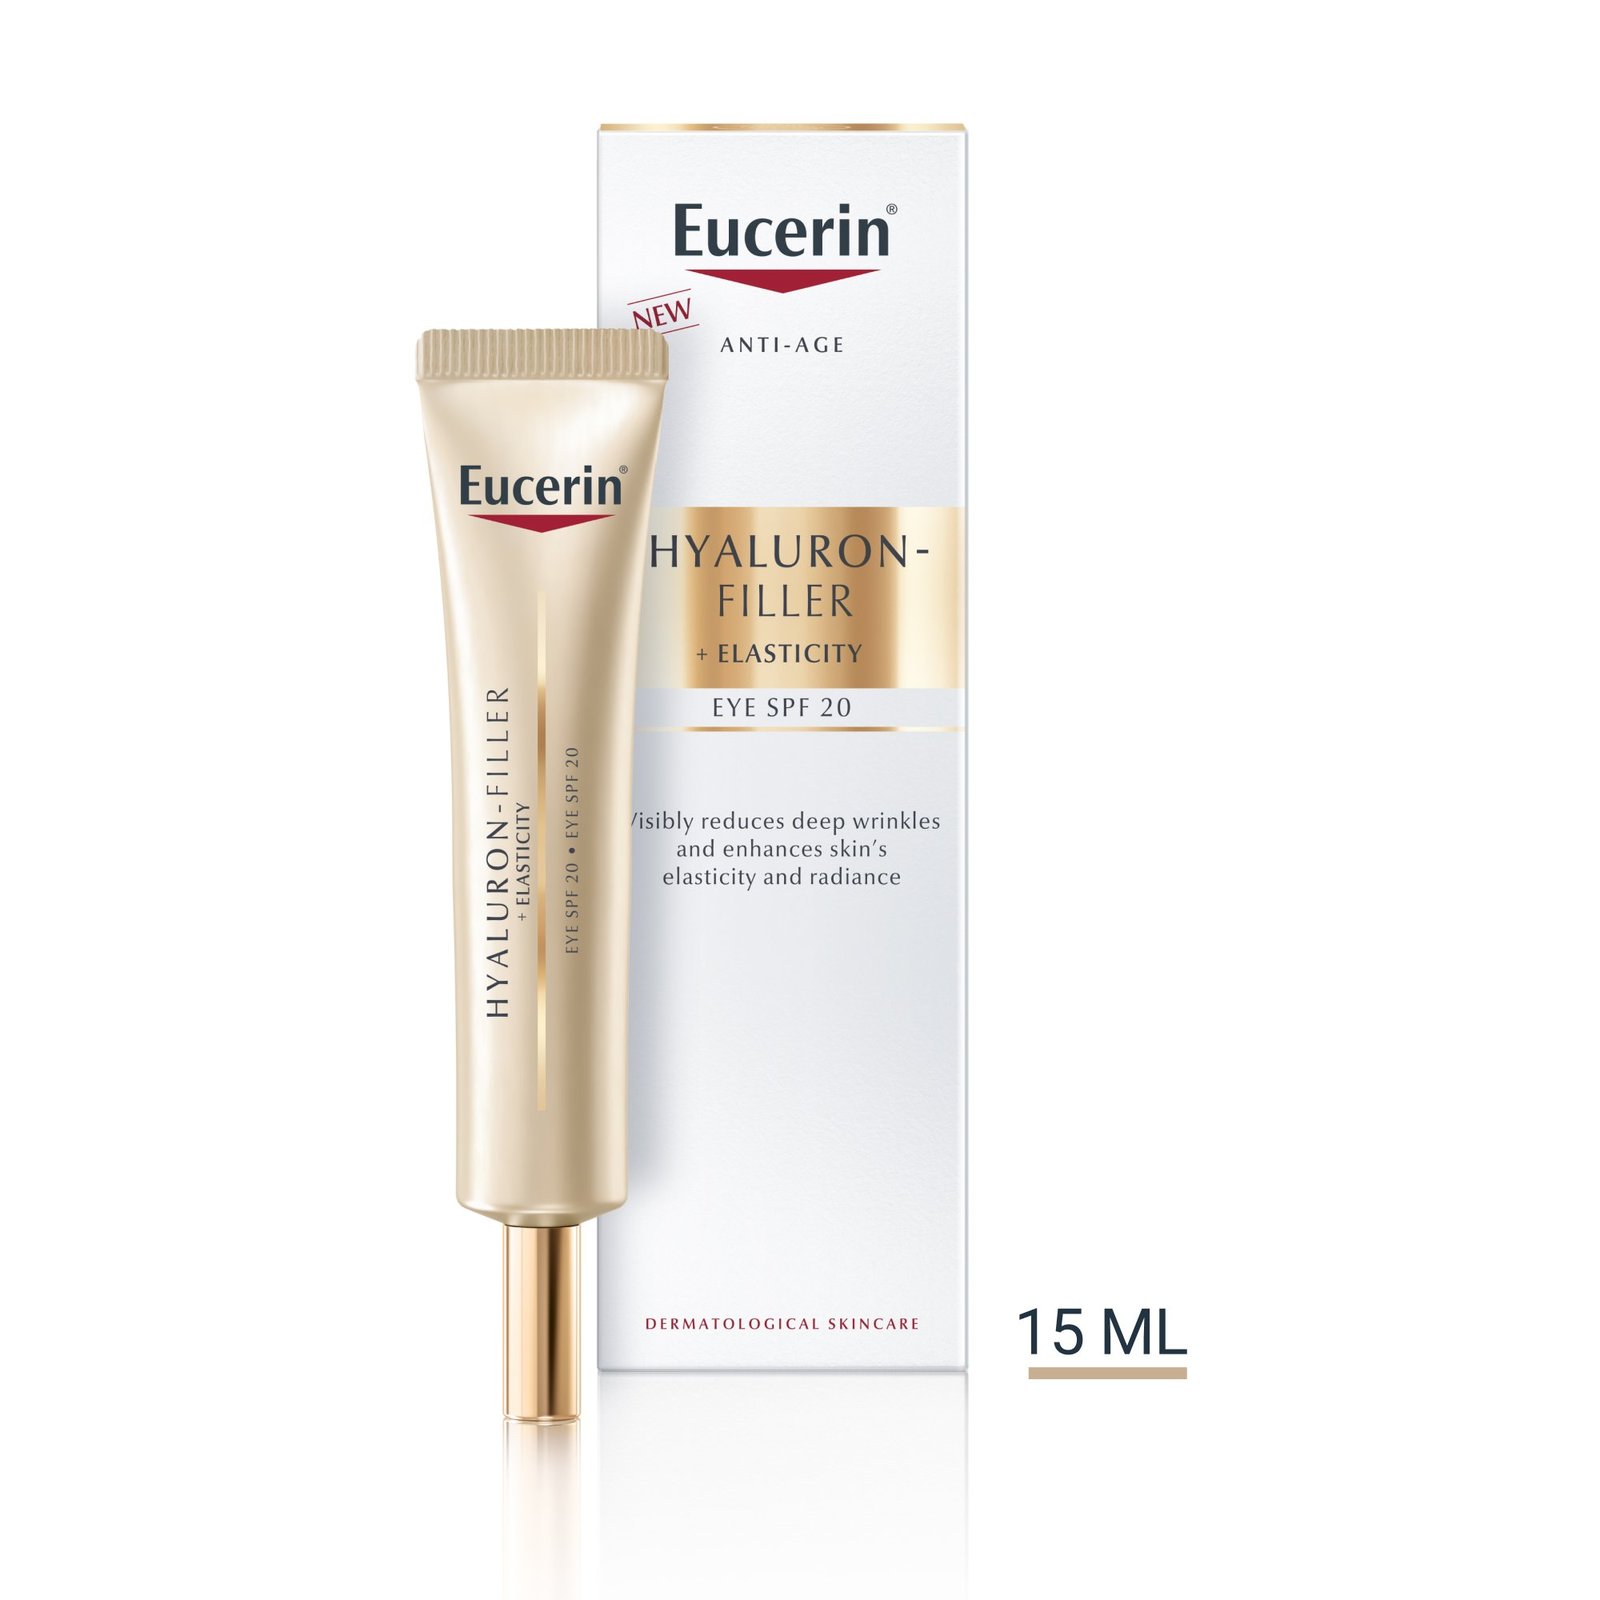 Eucerin Hyaluron-Filler + Elasticity SPF20 Eye Cream 15 ml